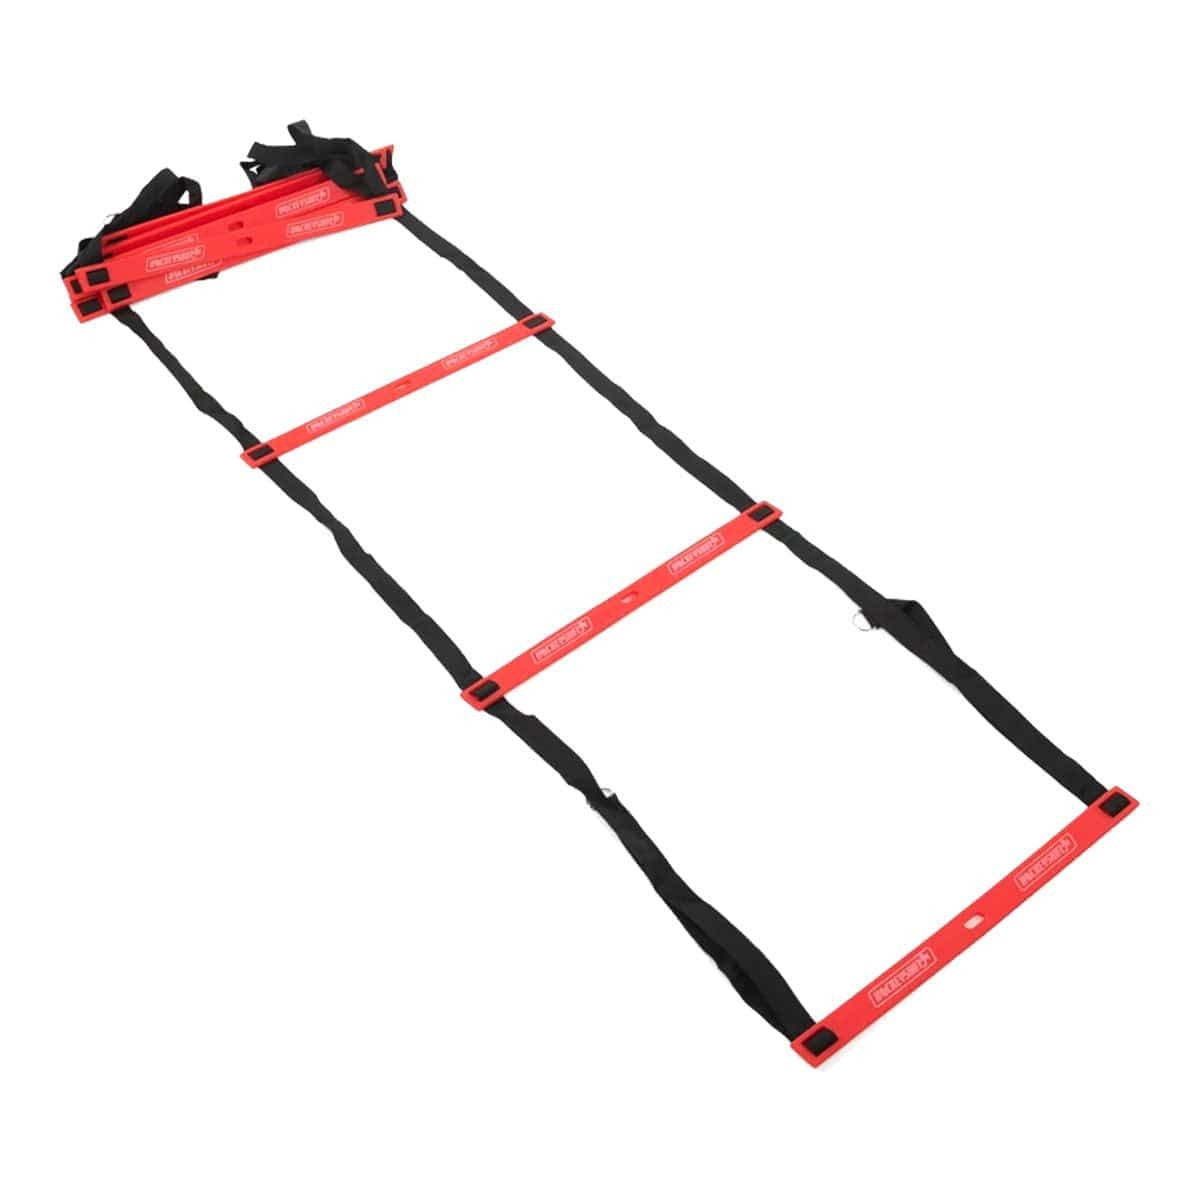 HockeyShot Agility Ladder